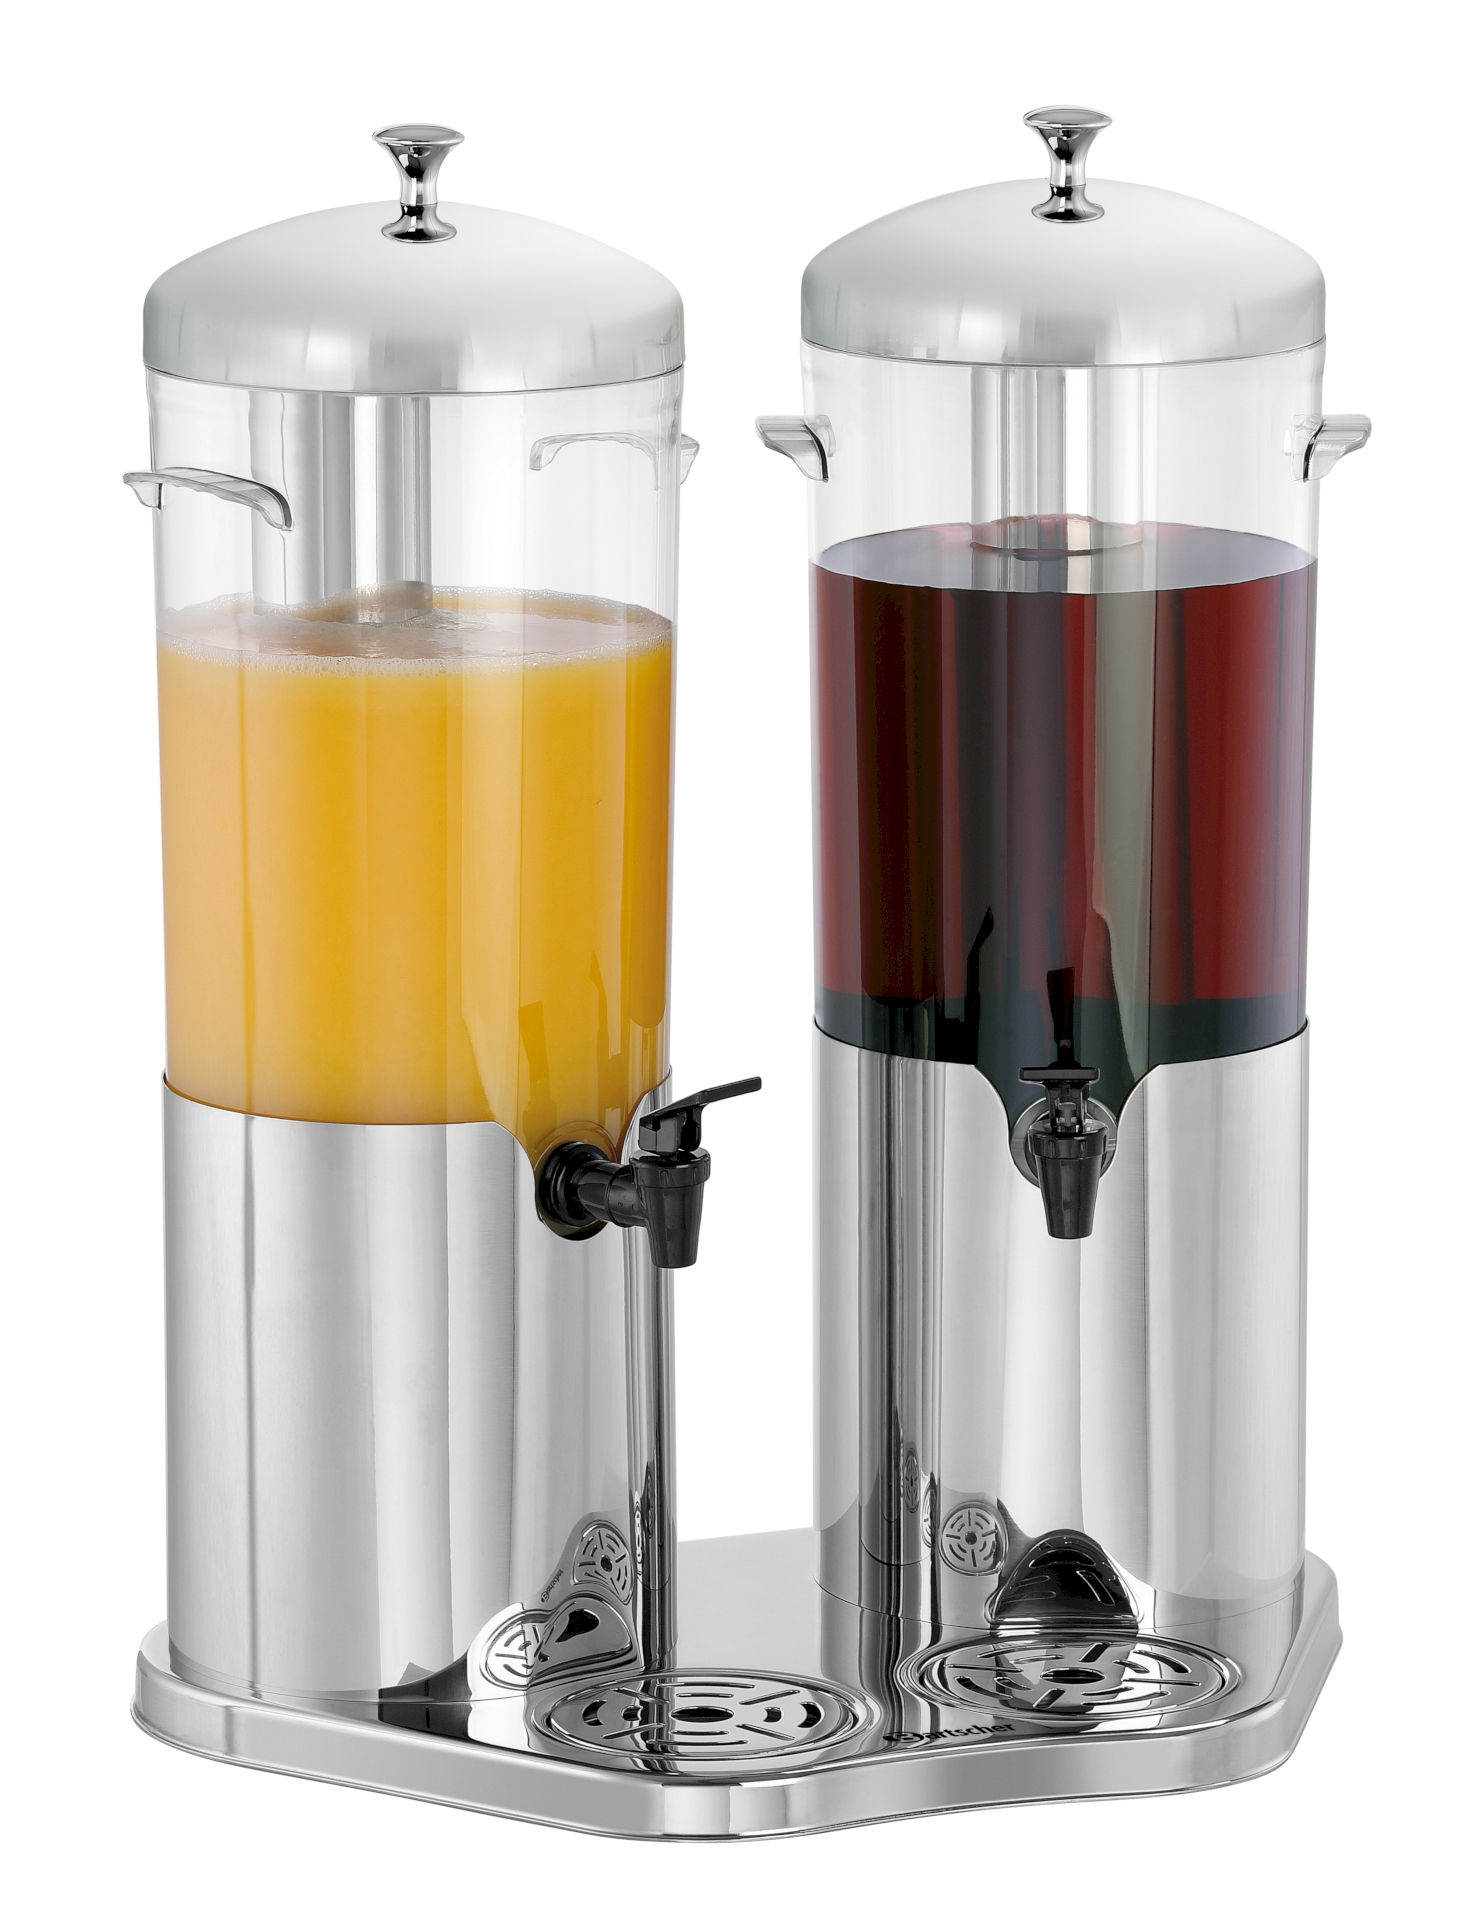 Bartscher Getränke-Dispenser DEW5 Duo